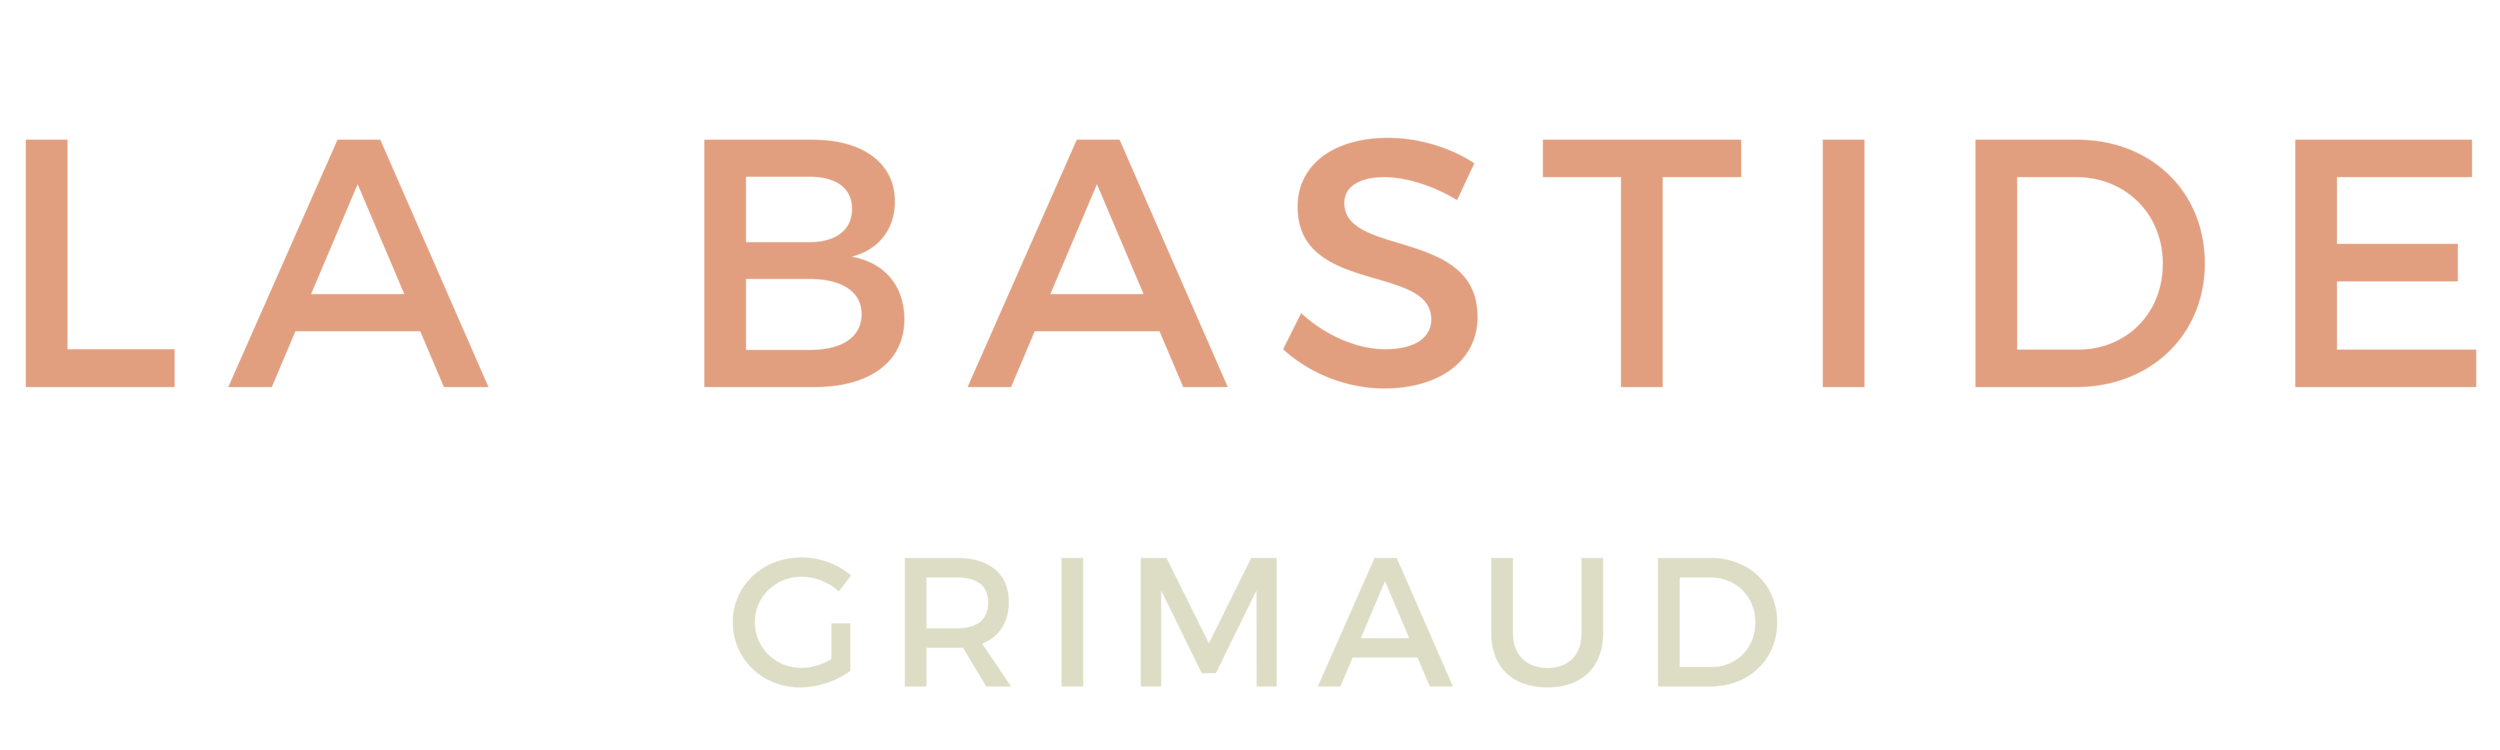 Luxury Bastide in Grimaud - Homanie